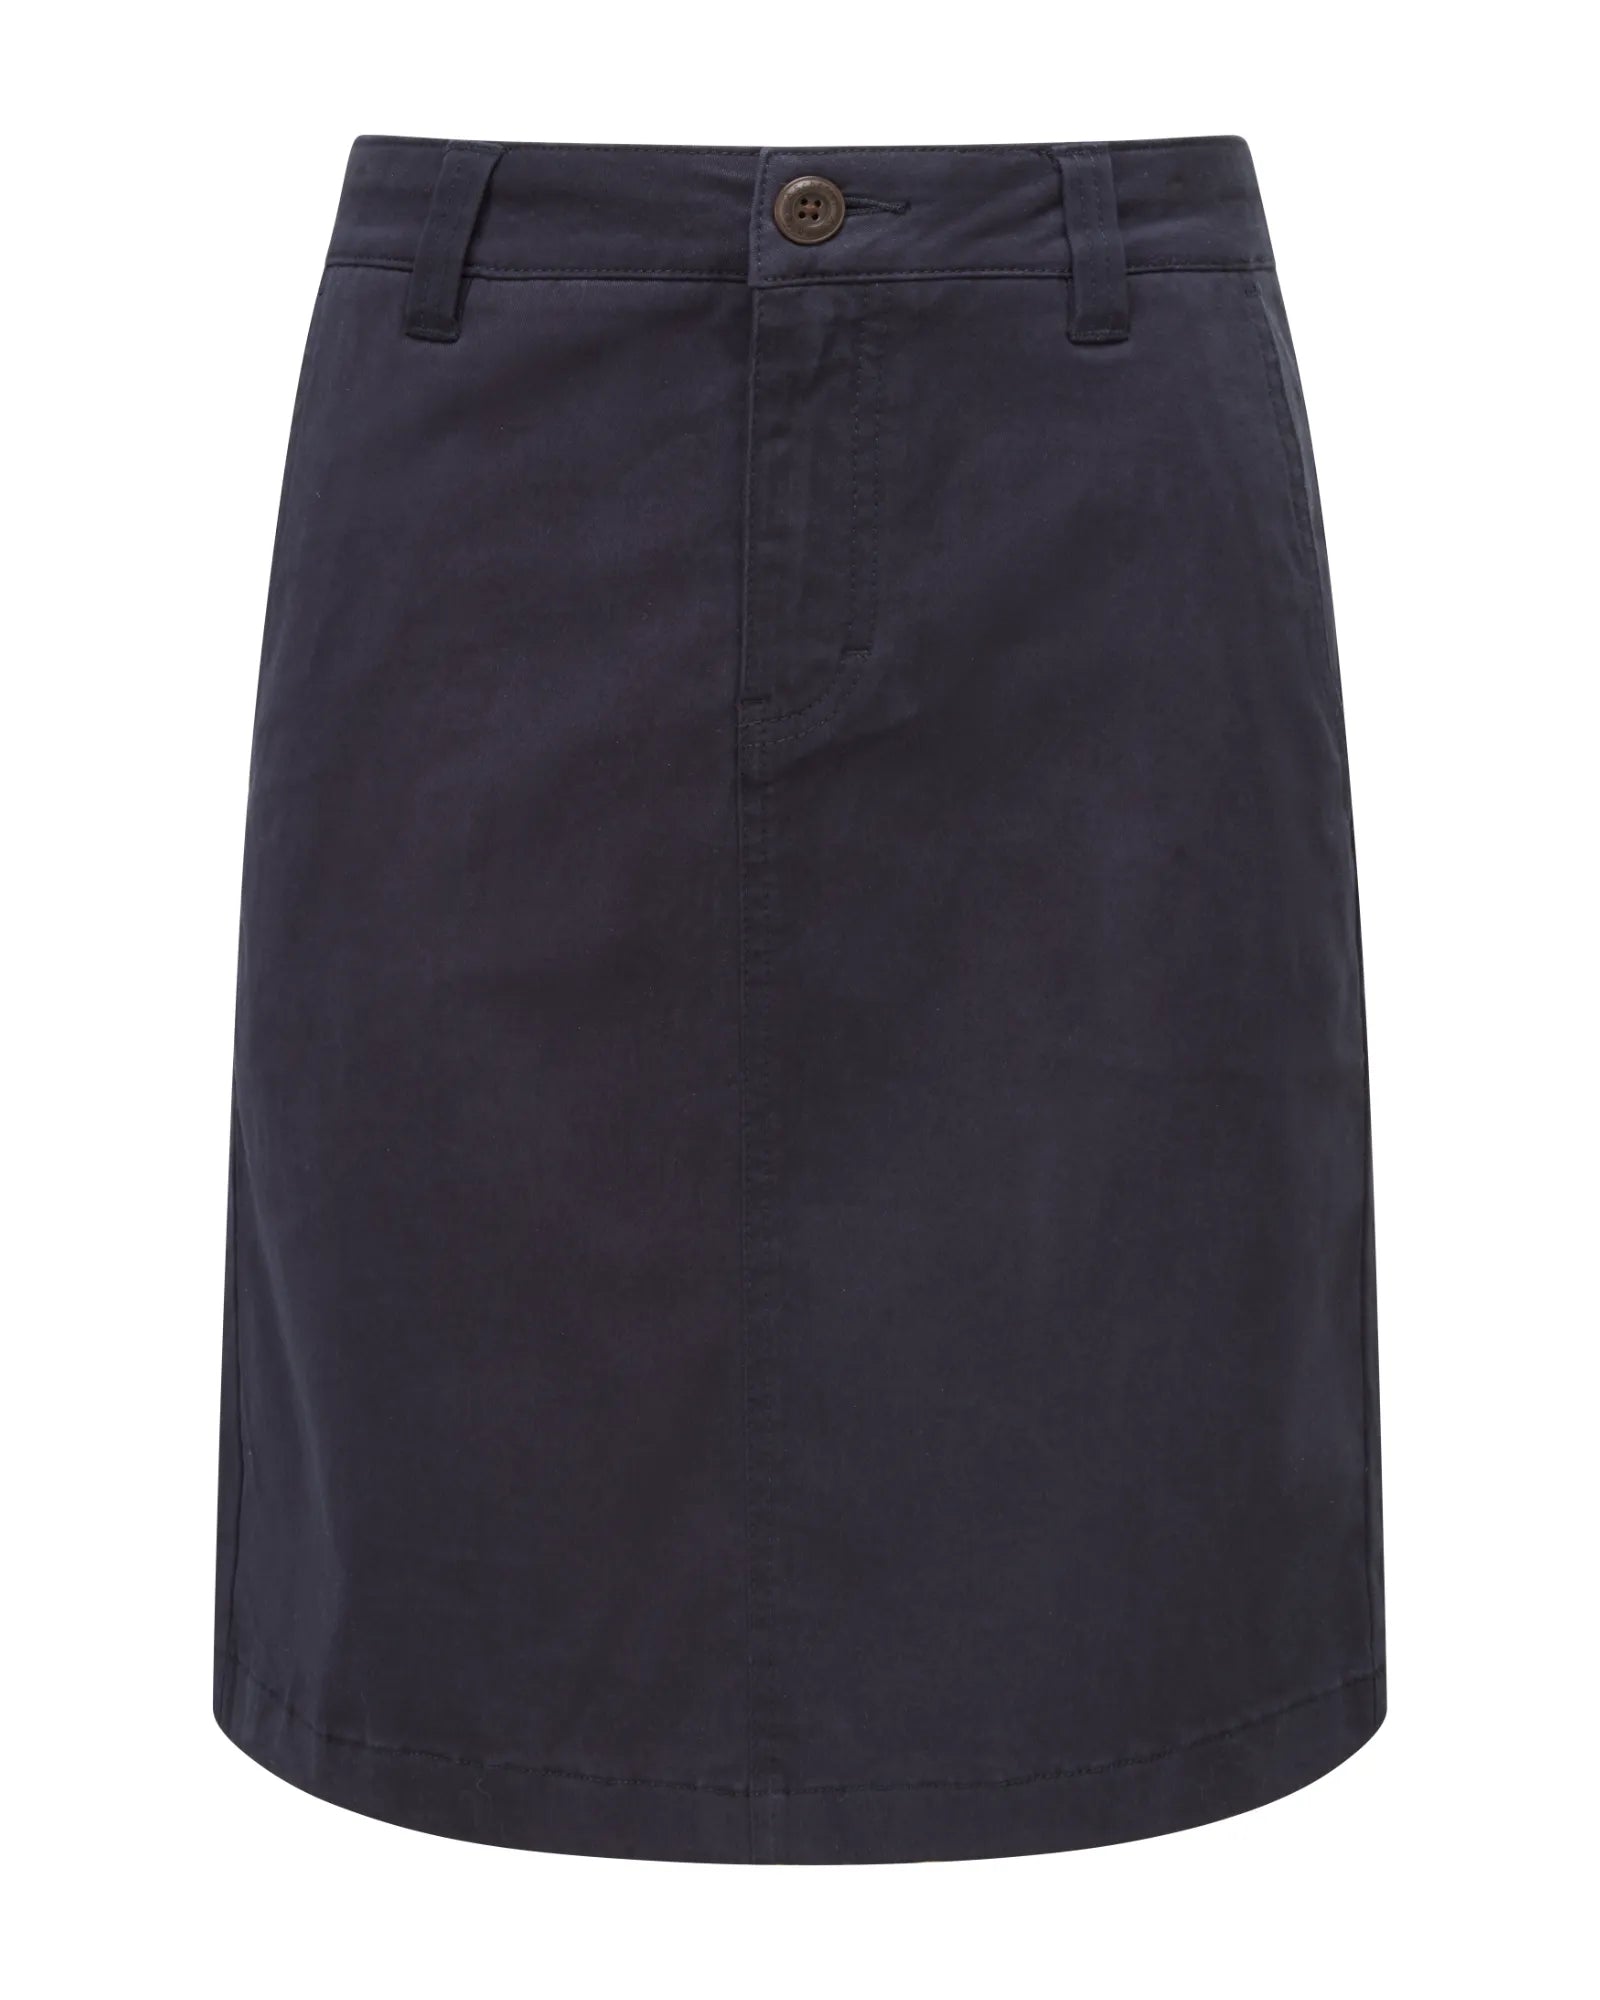 Lily Navy Chino Skirt